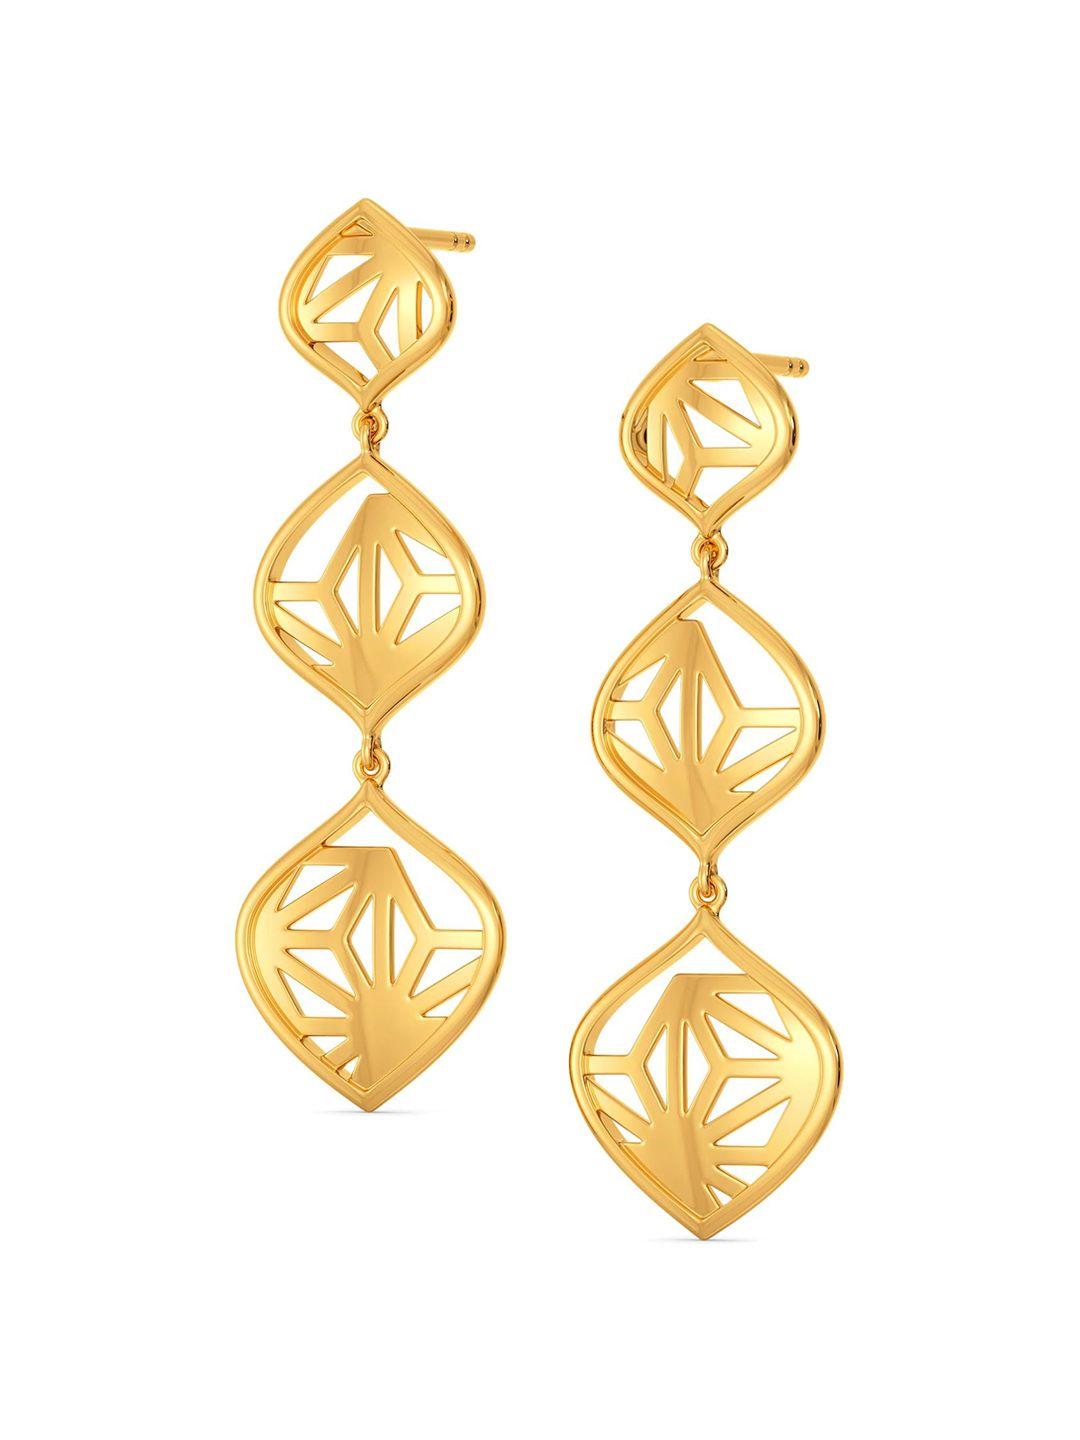 melorra 18kt bold lace gold drop earrings  4.47 g